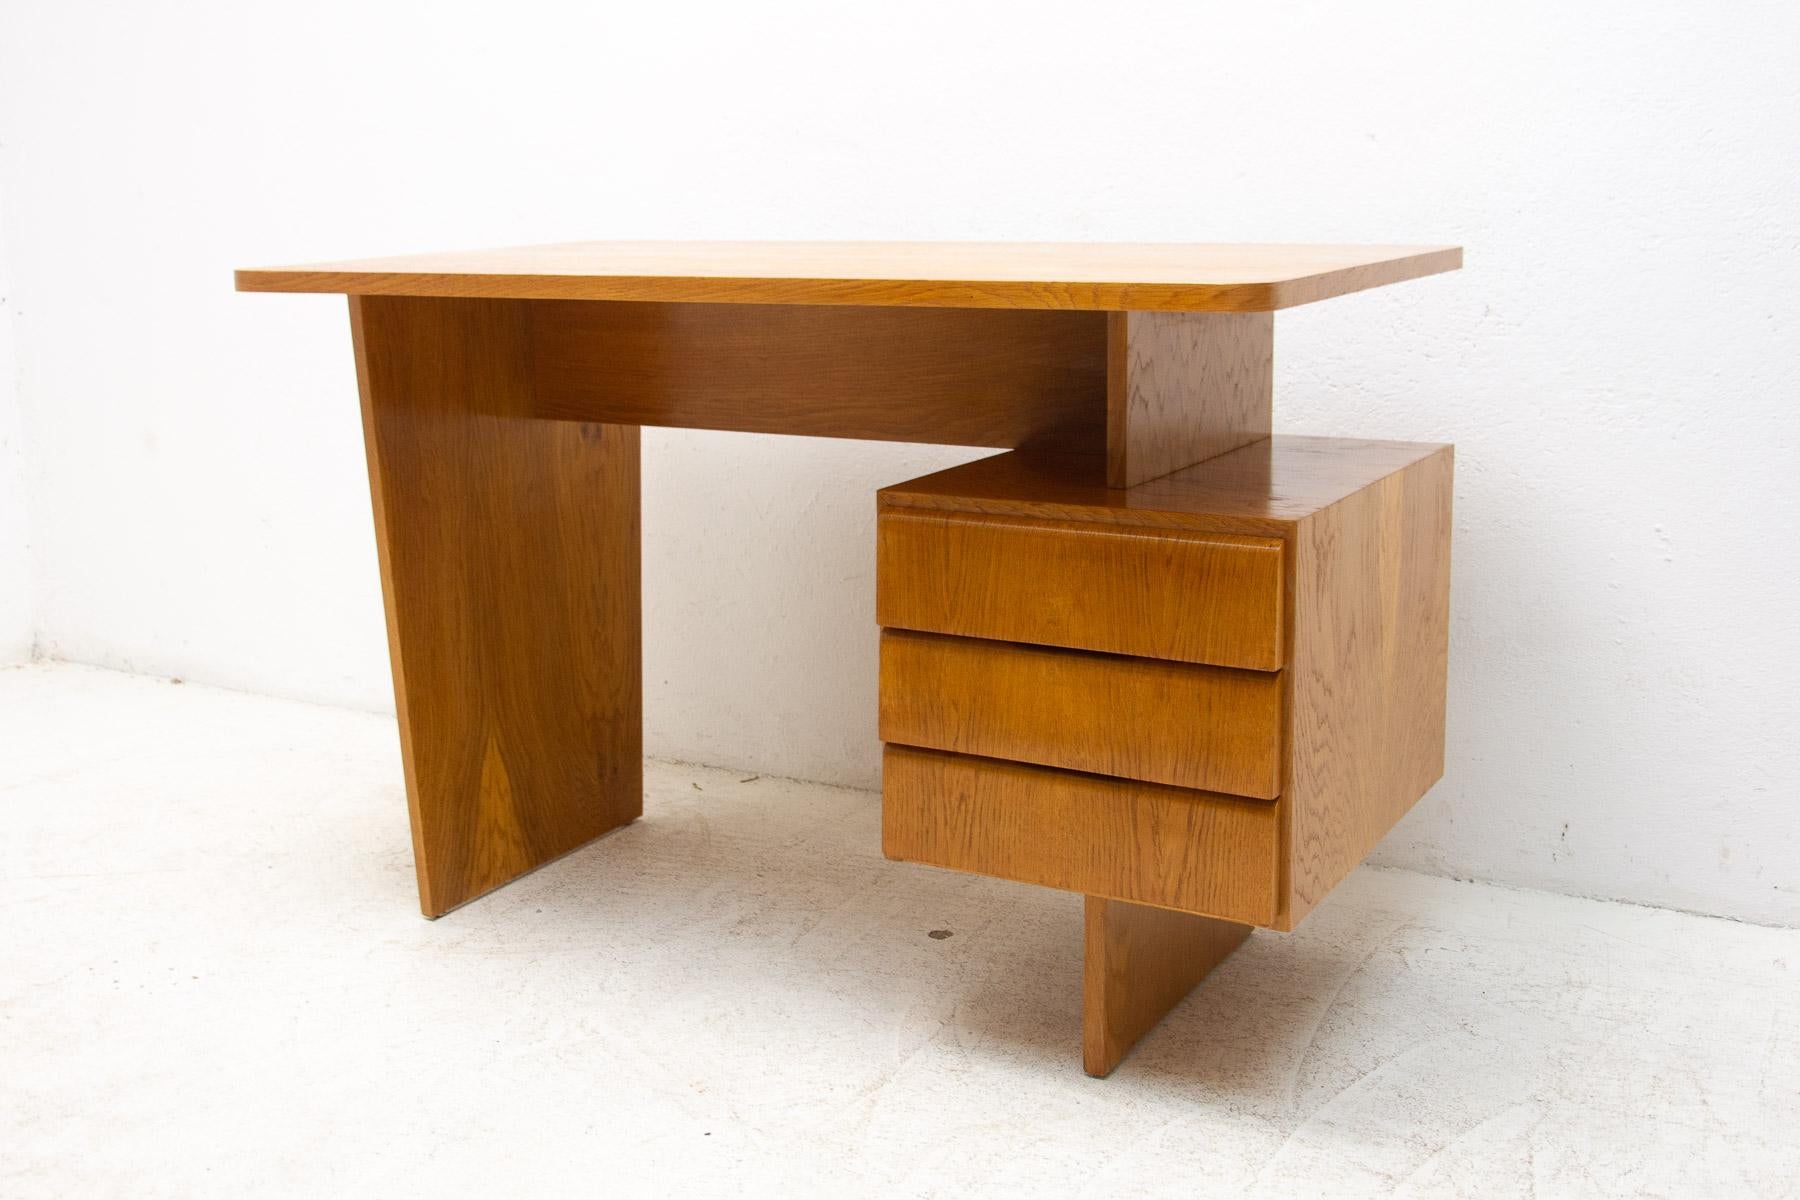 Dieser Schreibtisch wurde von Bohumil Landsman in den 1970er Jahren für die Firma Jitona entworfen. Das Design ist sehr einfach und elegant. Er verfügt über ein Fach mit 3 Schubladen. Es ist aus Buchenholz gefertigt.

Das Stück ist vollständig